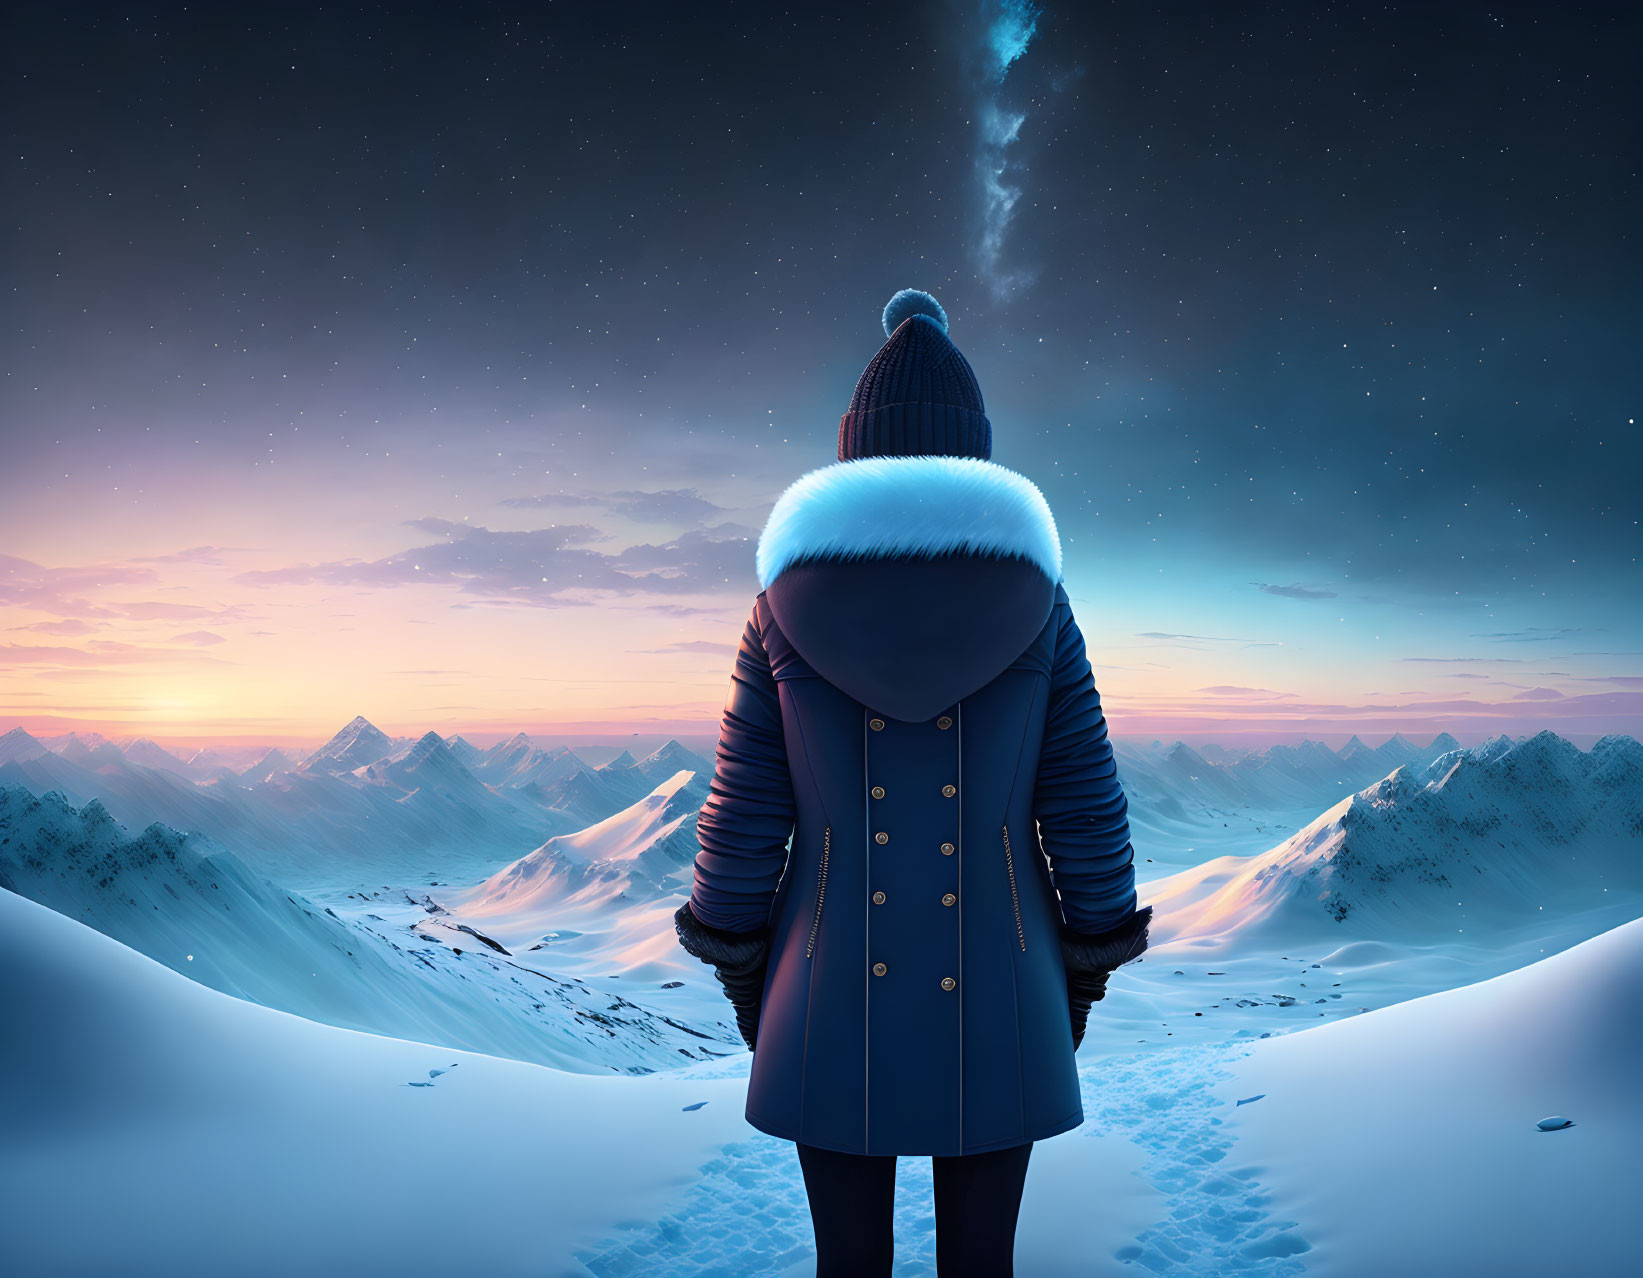 Person in Winter Attire in Snowy Mountain Landscape at Twilight